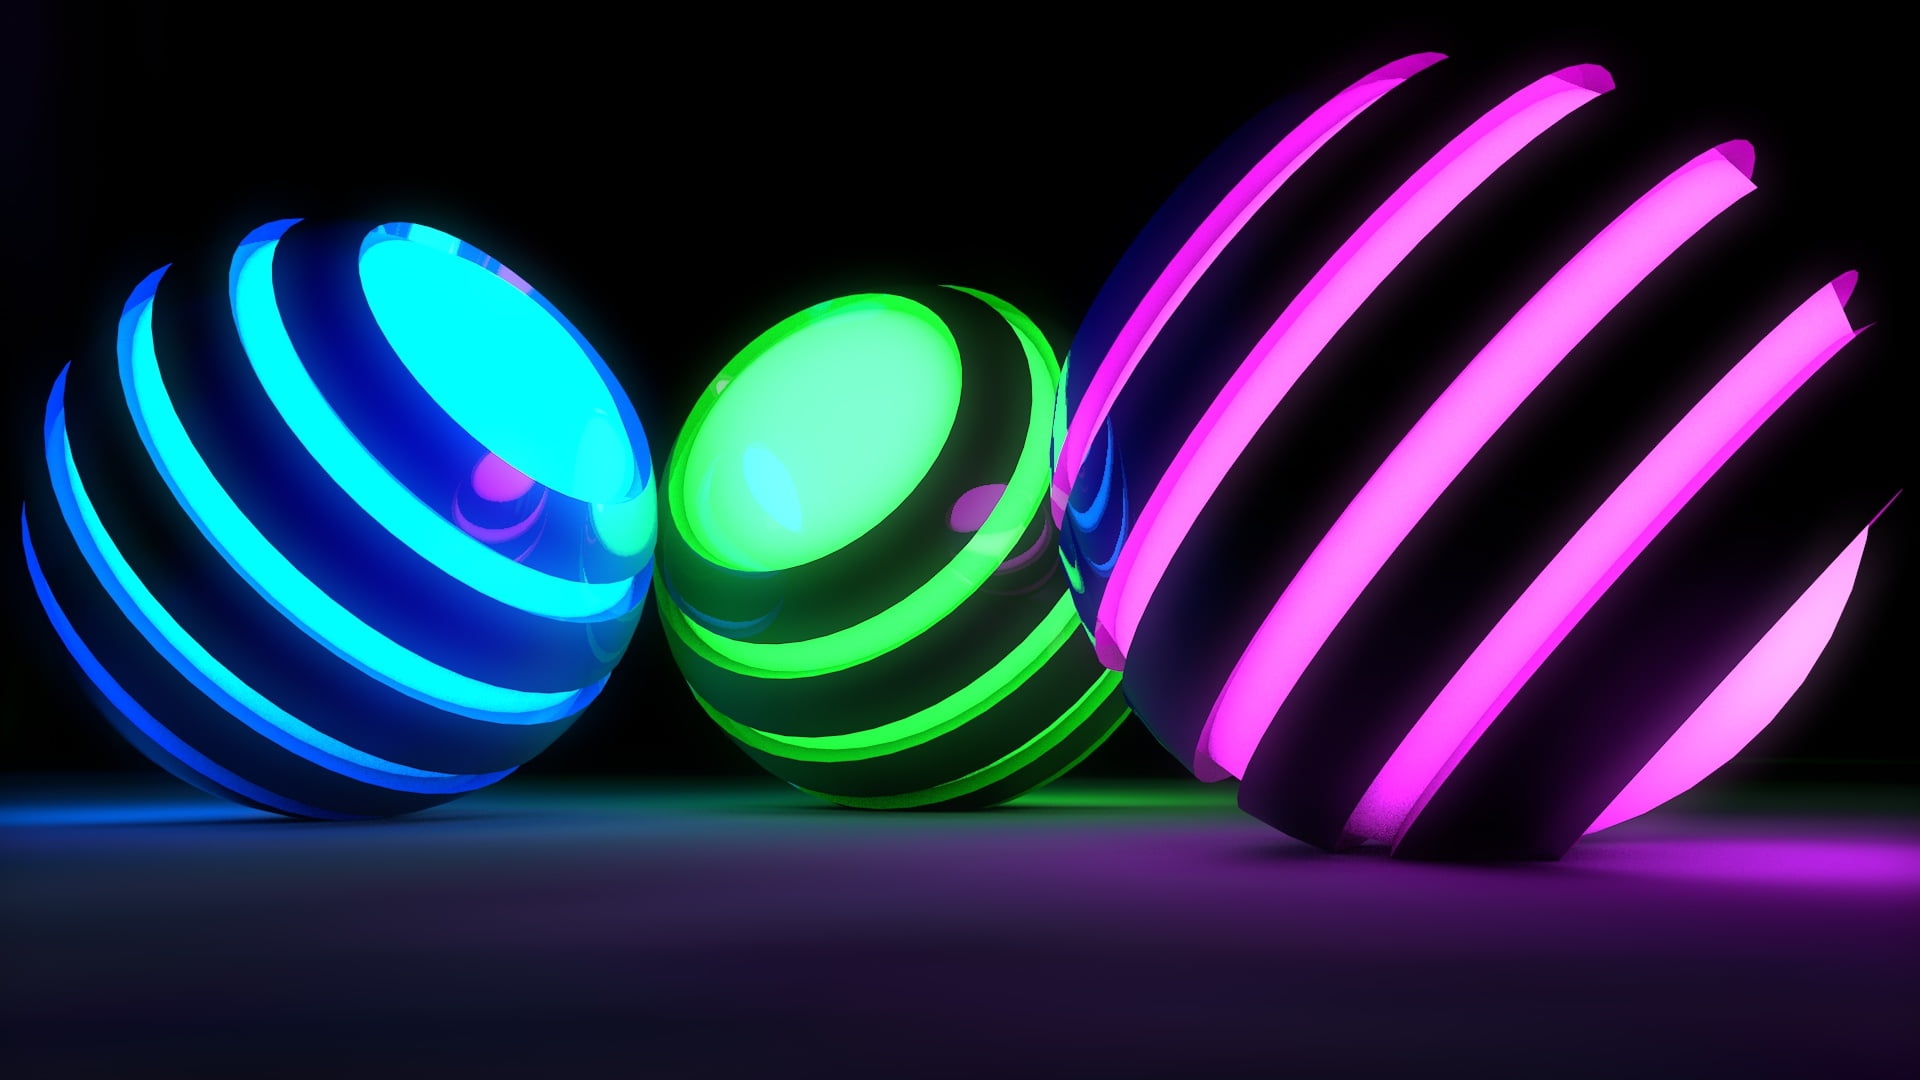 blue, green, and pink ball light fixtures